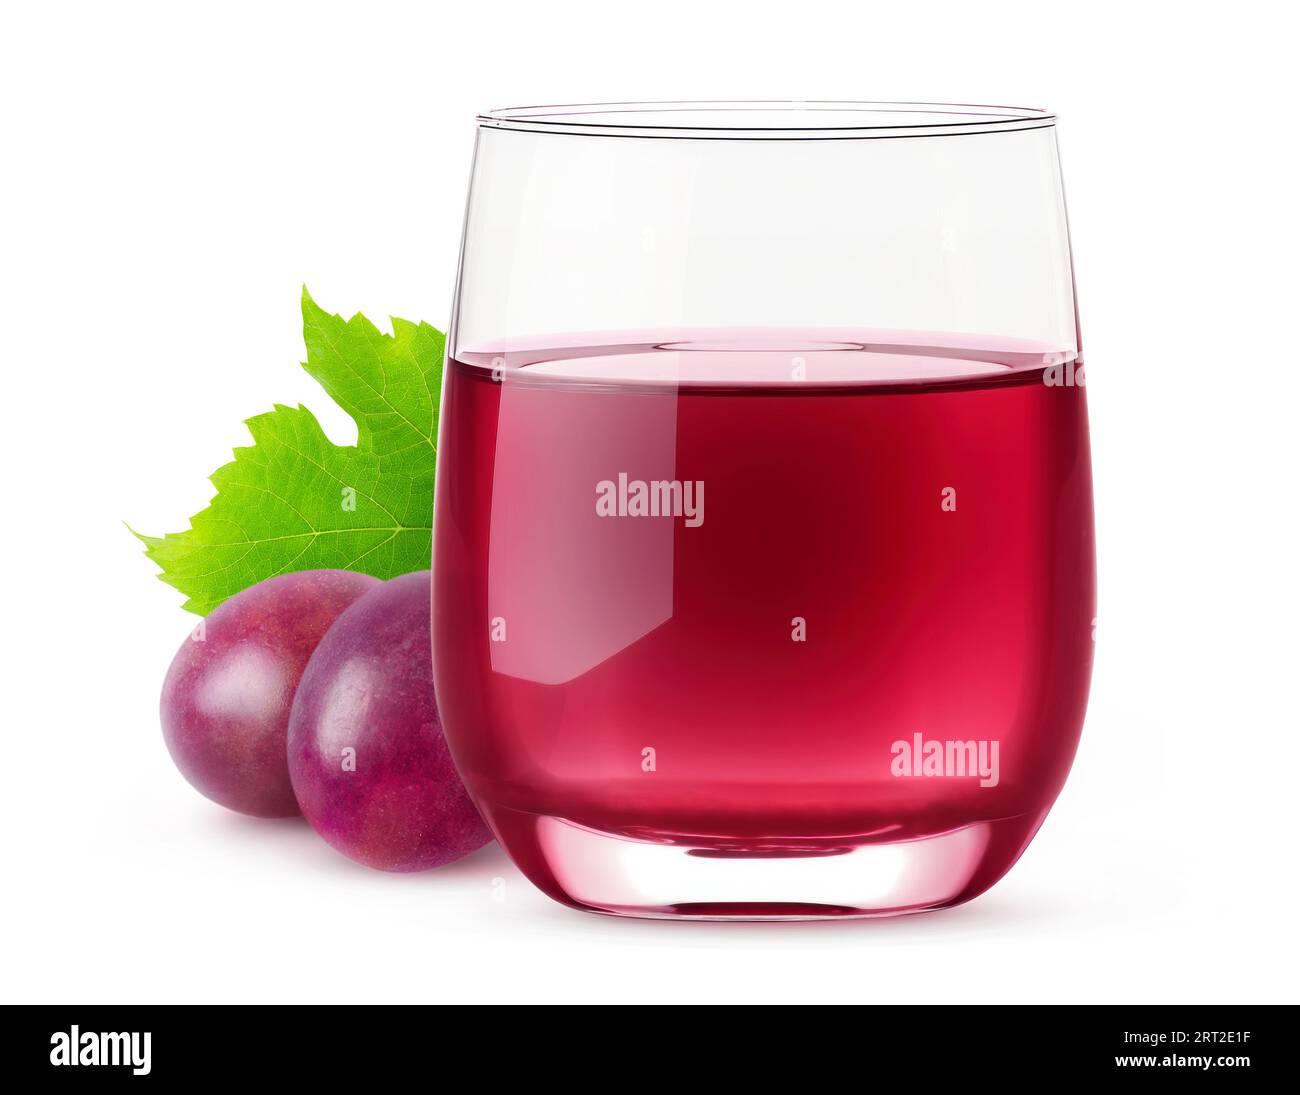 Jus de raisin rouge dans un verre, isolé sur fond blanc Banque D'Images